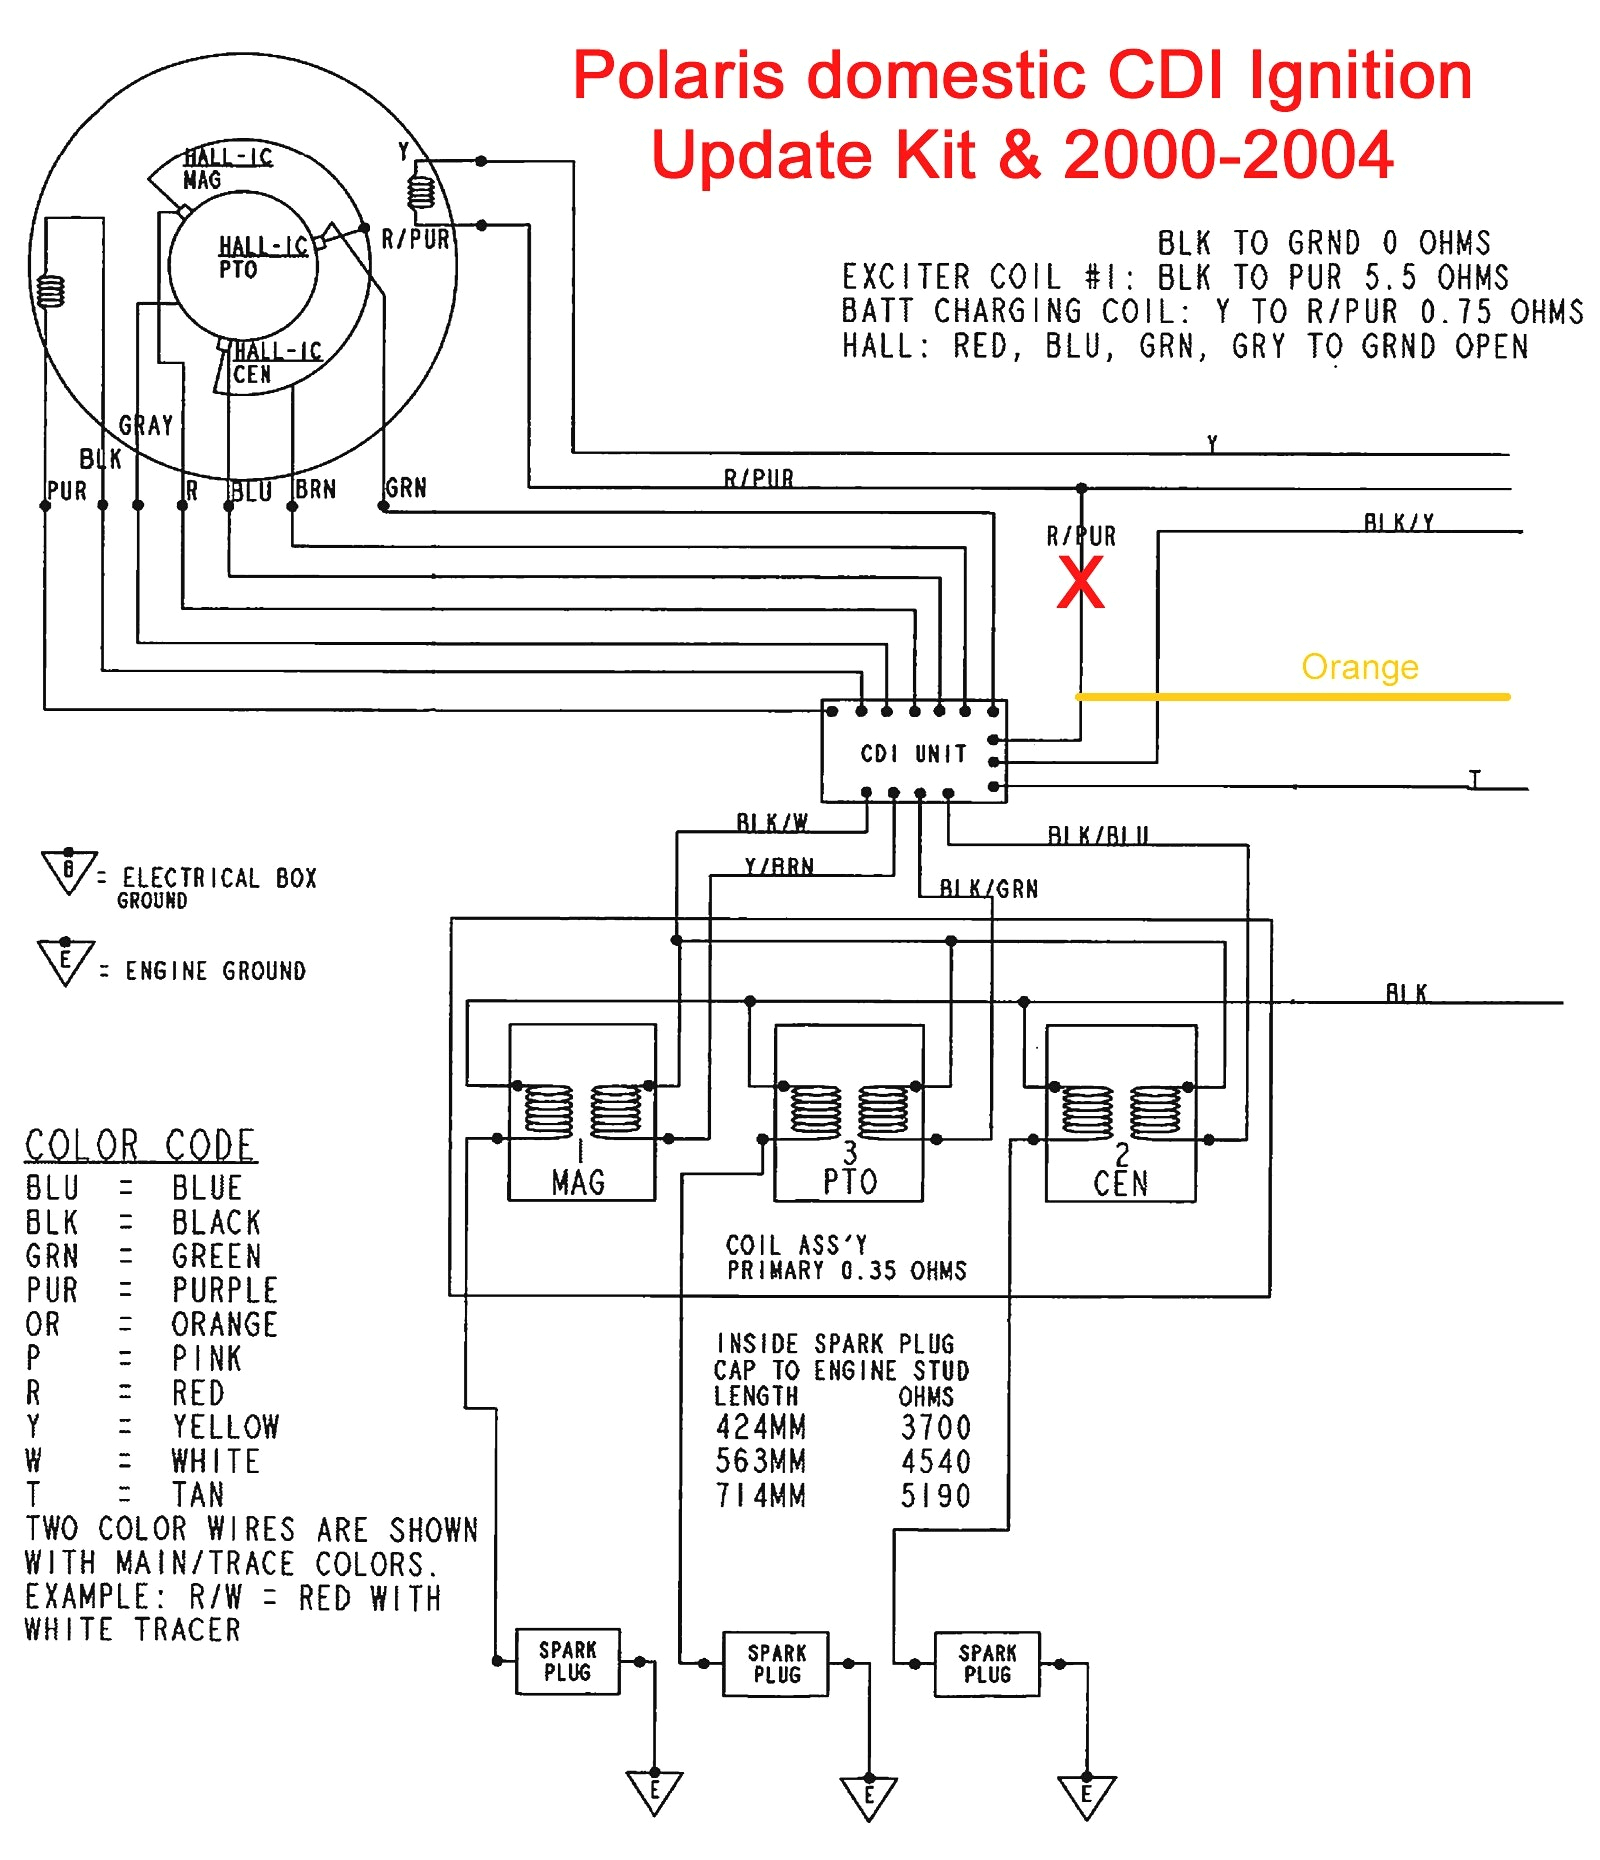 boss plow solenoid wiring diagram wiring diagram world boss plow solenoid wiring diagram boss wiring solenoid